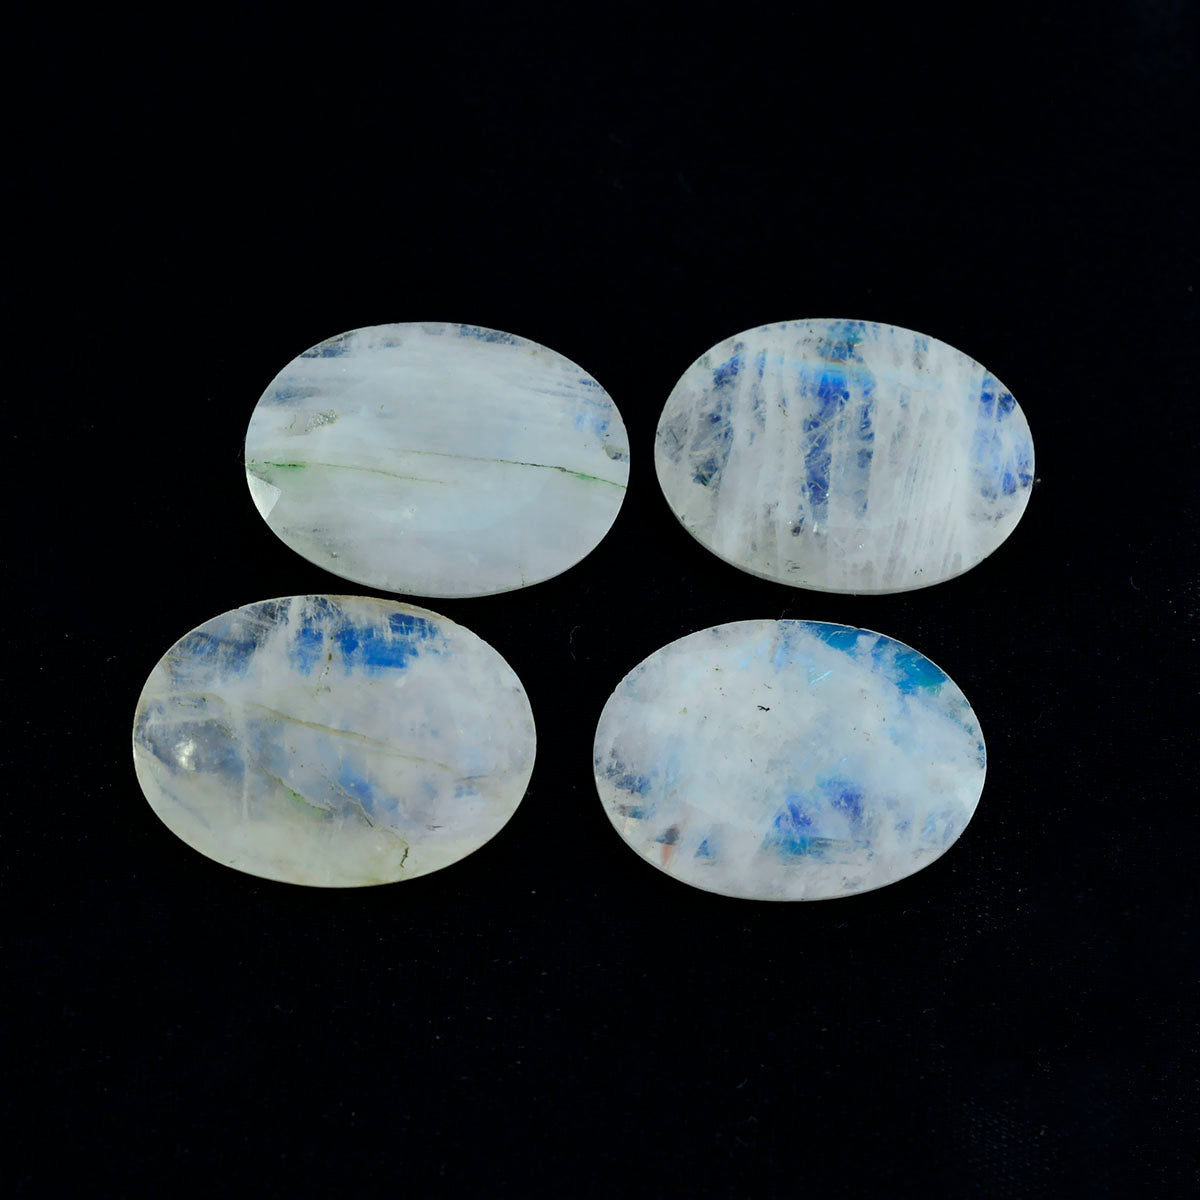 riyogems 1 шт., белый радужный лунный камень, ограненный 10x12 мм, овальной формы, хорошее качество, свободный драгоценный камень